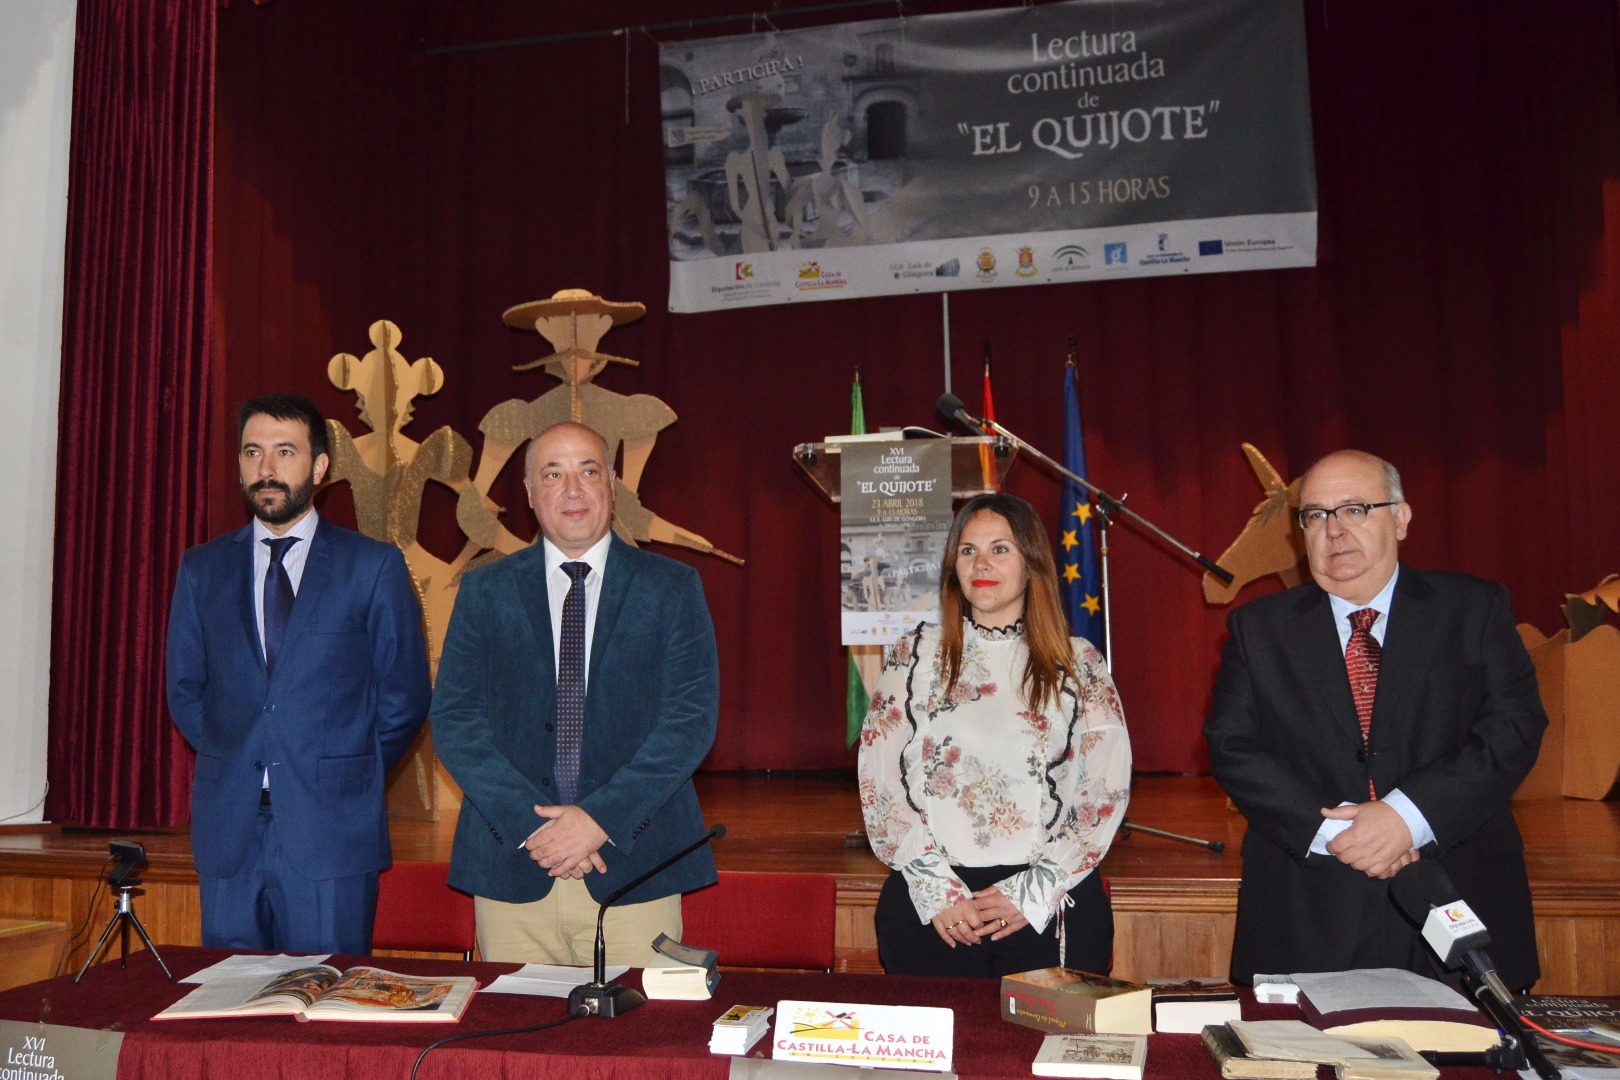 El presidente de la Diputación se suma a la celebración del Día del Libro iniciando la lectura continuada de El Quijote.